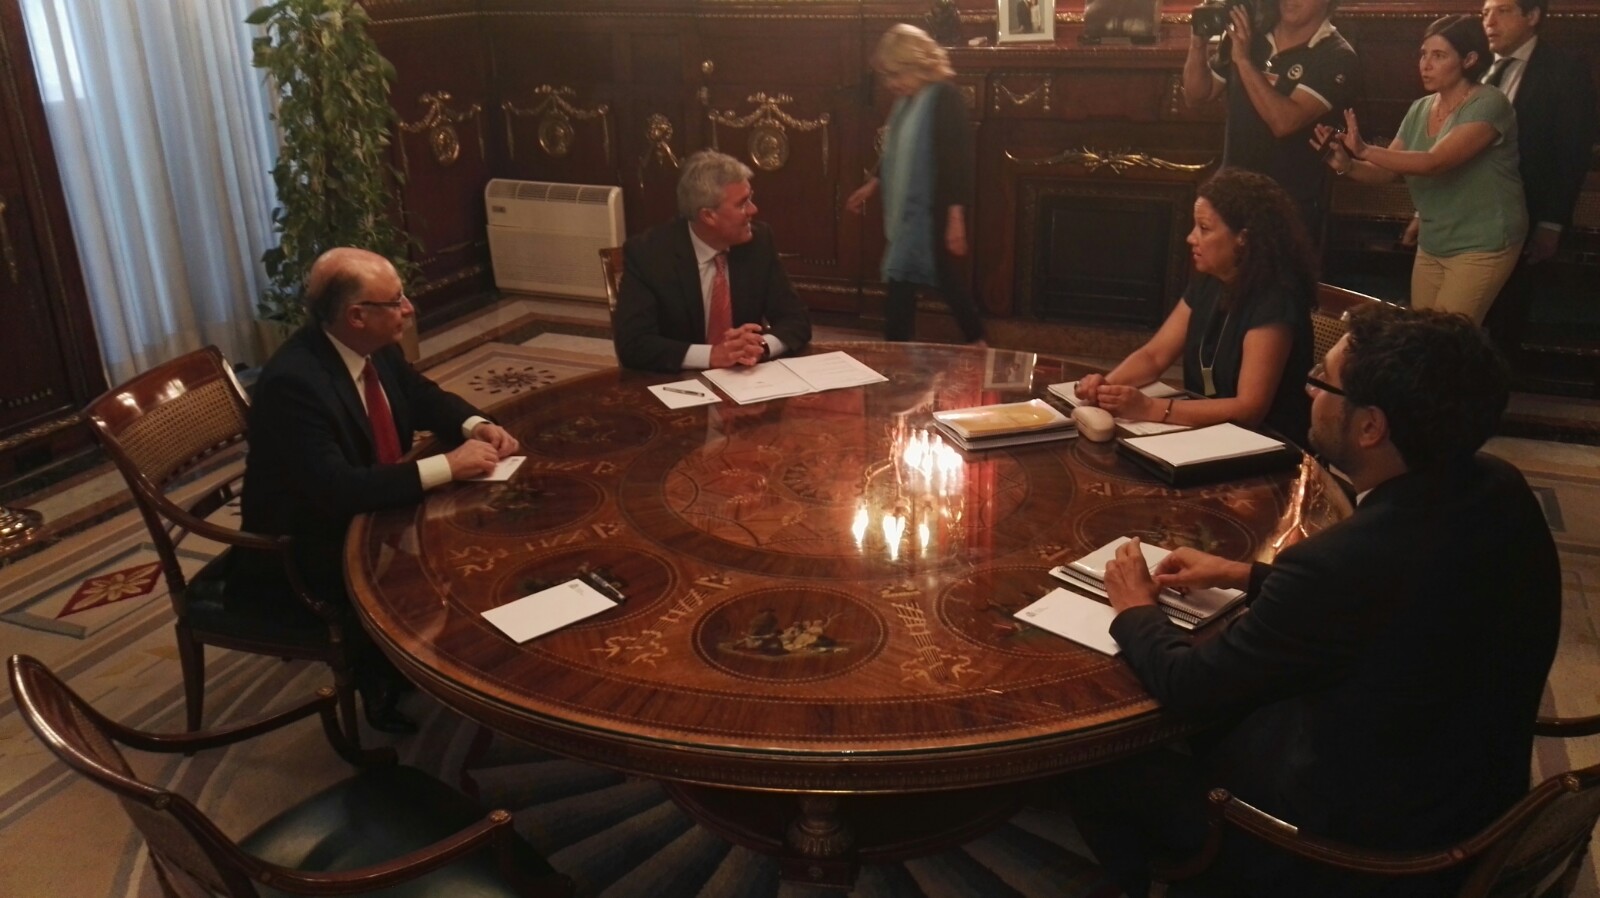 Balears aconsegueix el compromís del ministre Montoro per consensuar un projecte de nou Règim Especial de les Illes Balears a finals d'enguany.